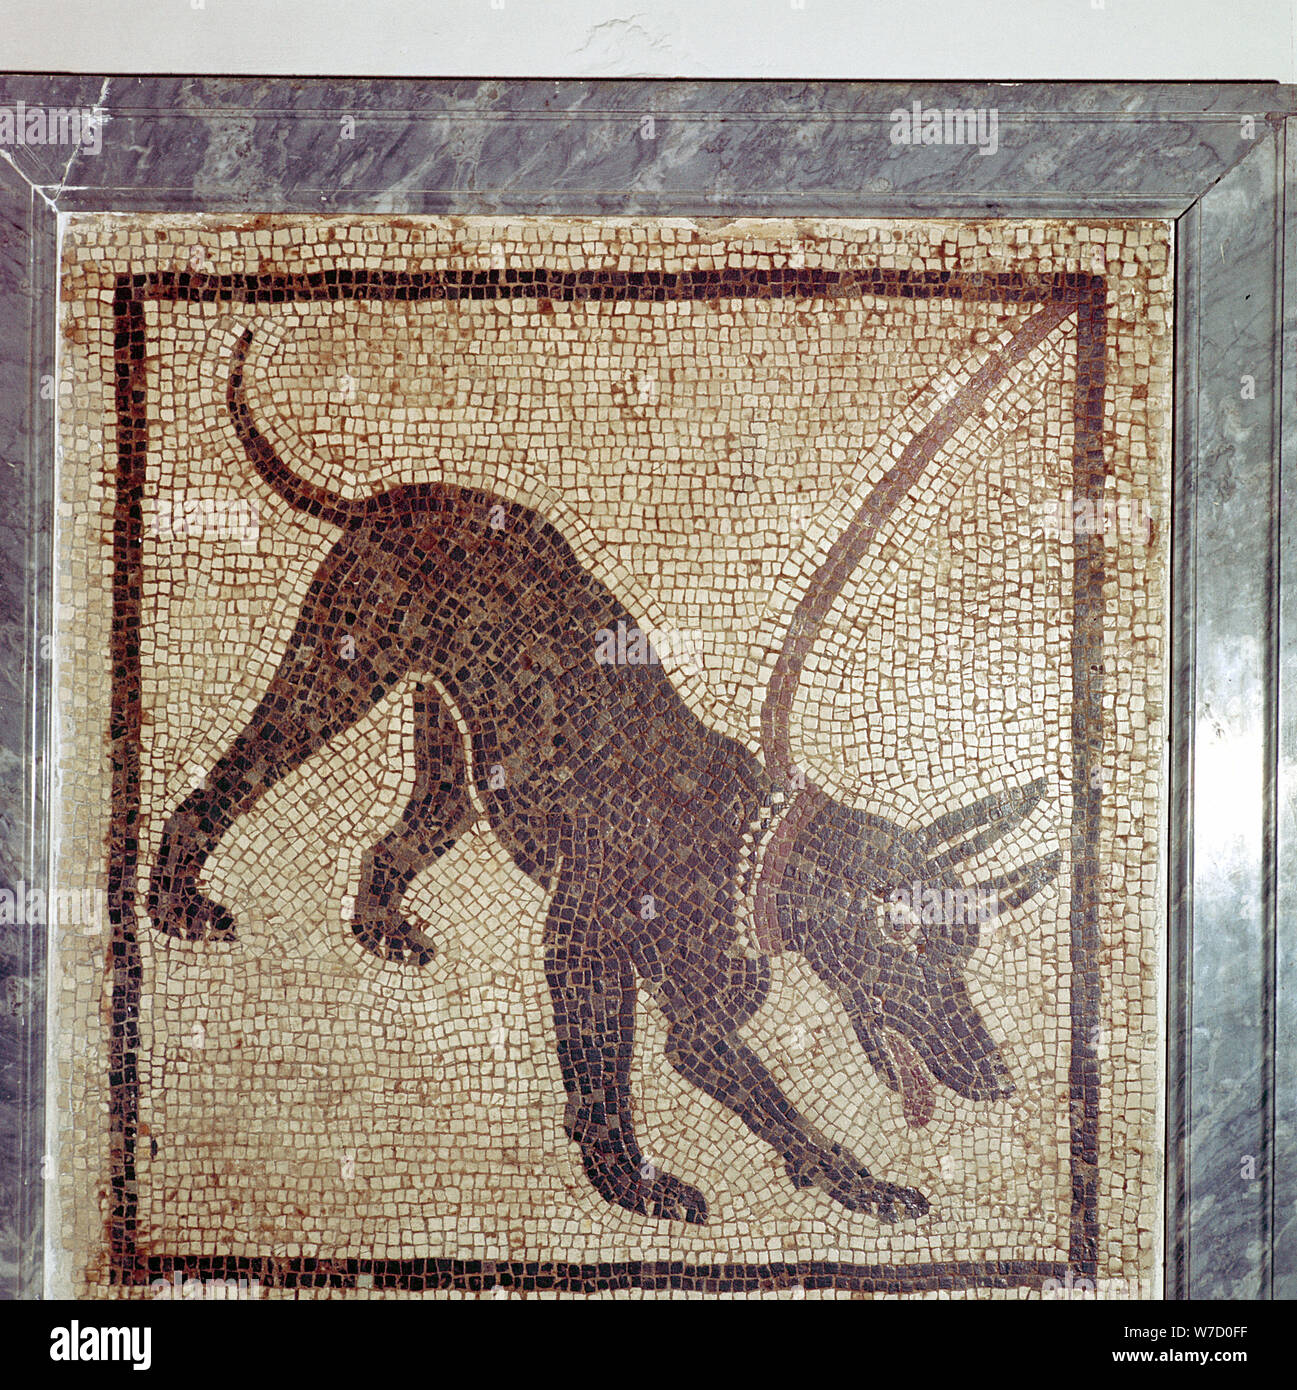 Mosaico romano de perro, Cave Canem, Pompeya, Italia. Artista: Desconocido Foto de stock